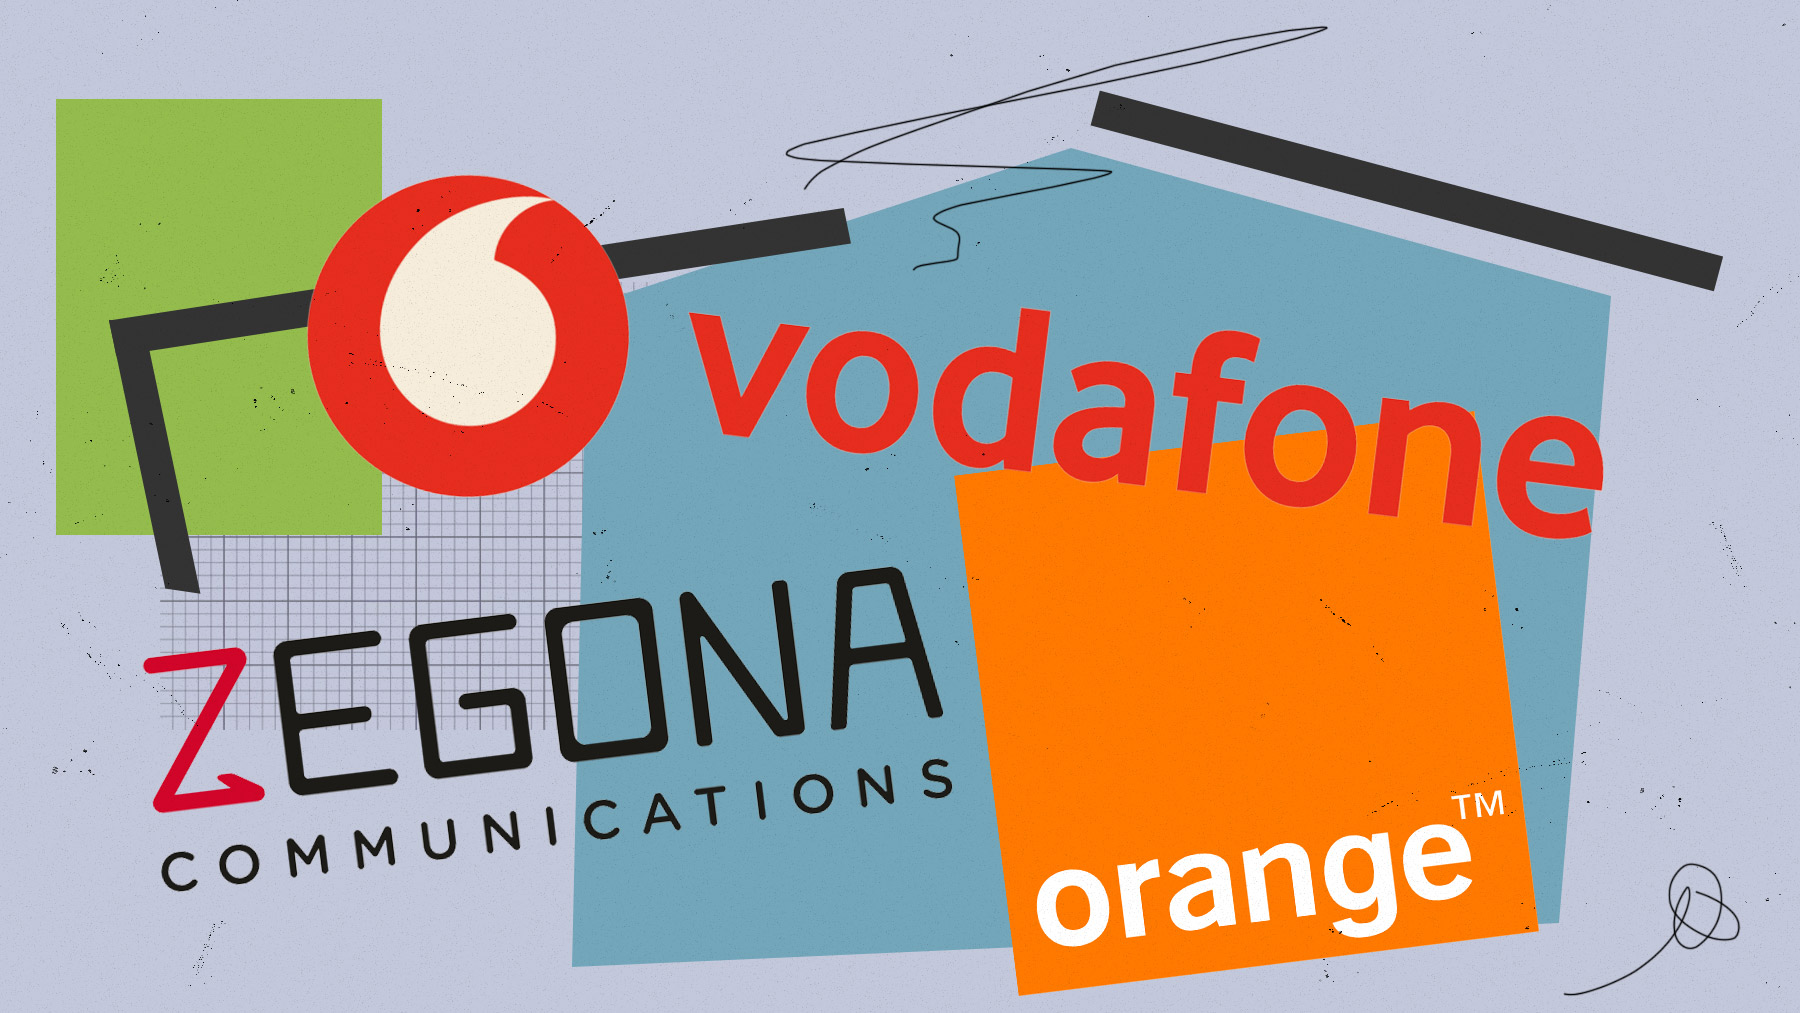 Zegona ya ha comunicado la posibilidad de fusionar Vodafone y MásMóvil si la fusión de éste con Orange fracasa